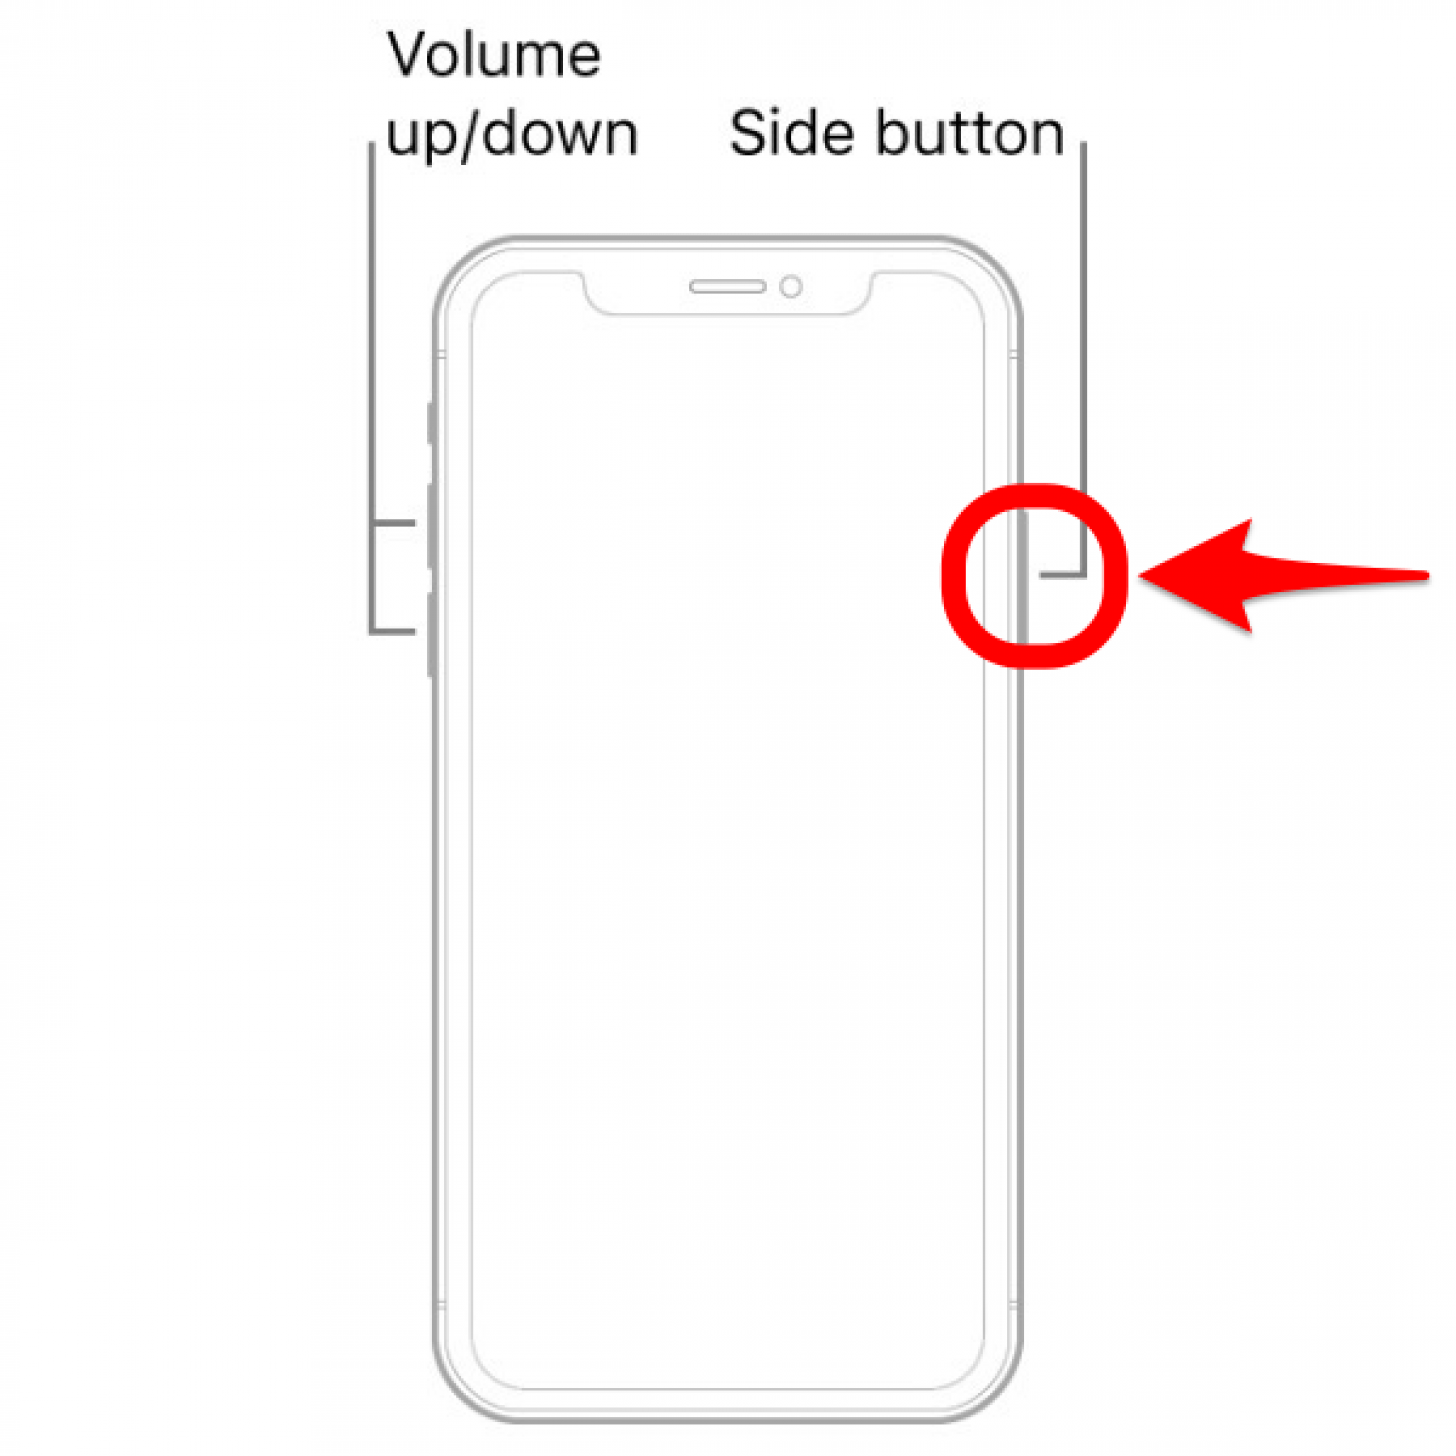 Halten Sie die Seitentaste gedrückt – So starten Sie das iPhone XS Max neu